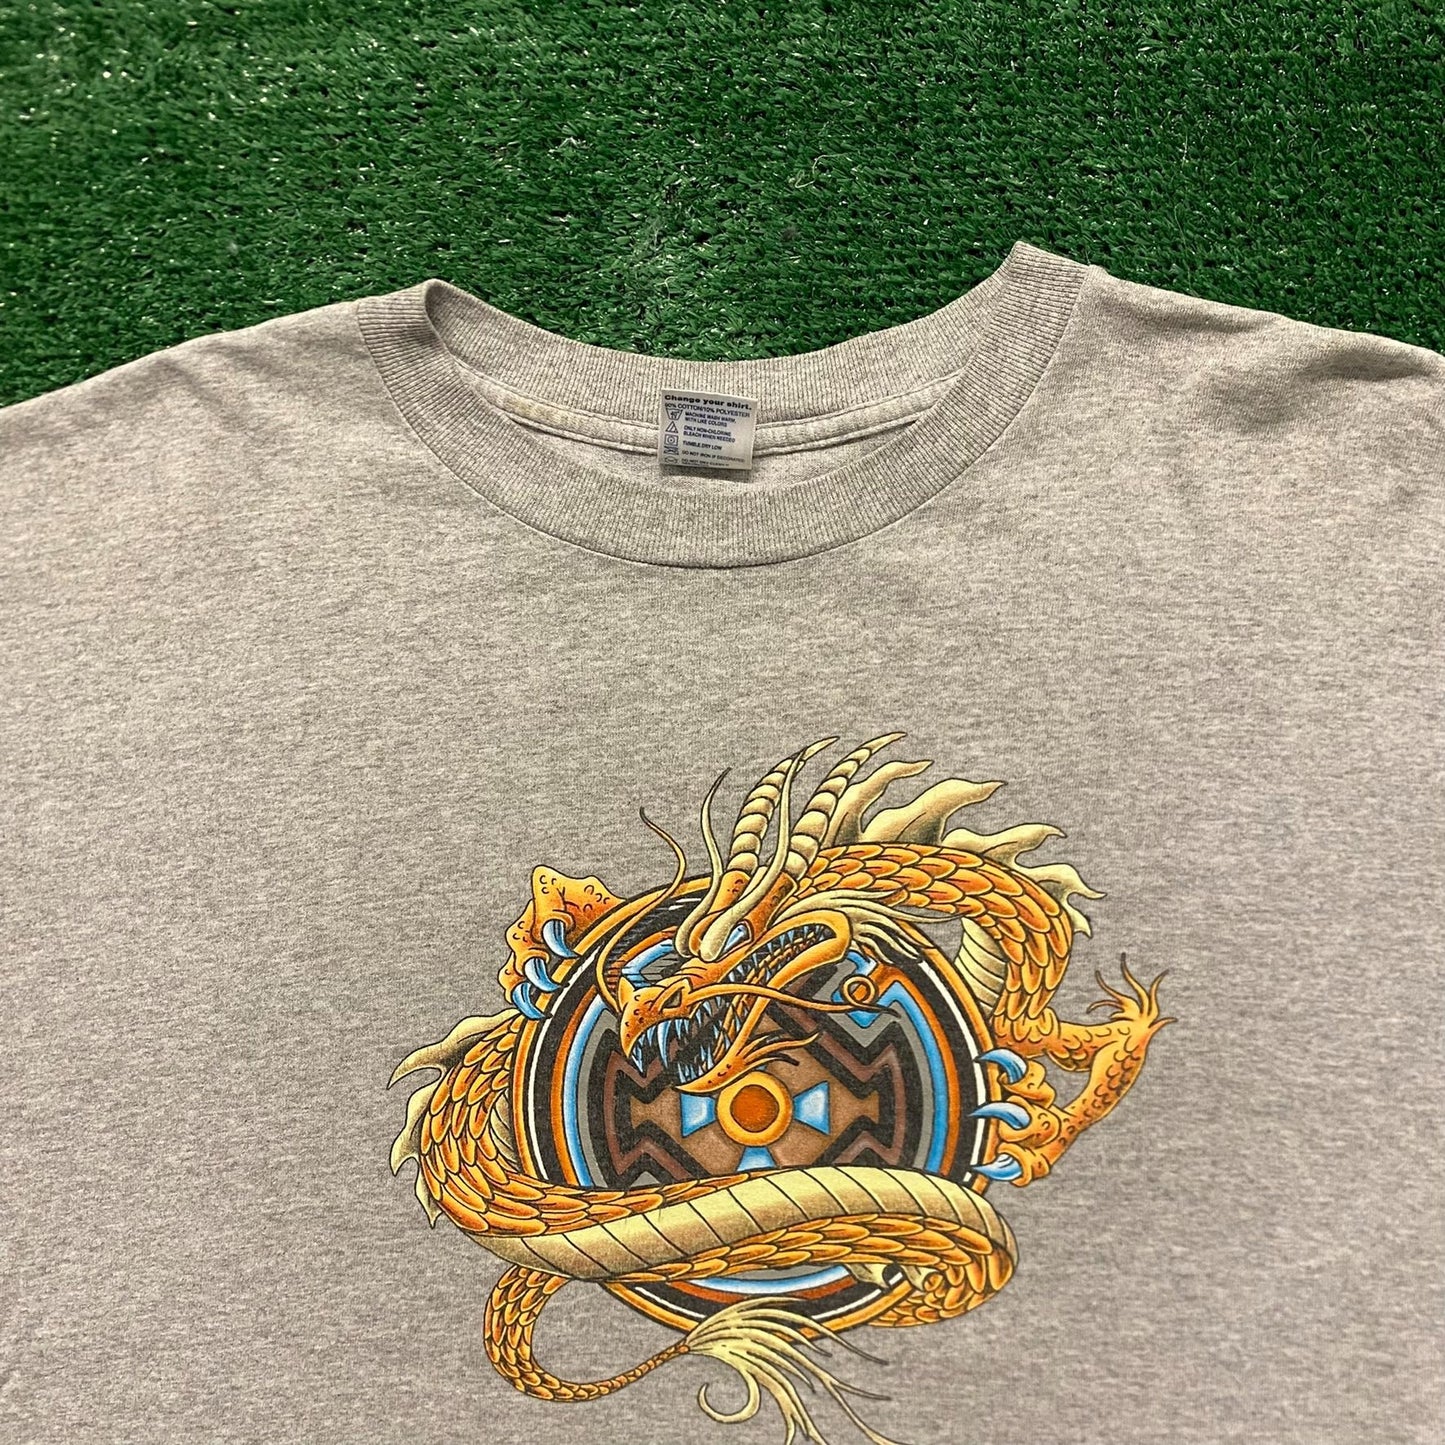 Golden Dragon Vintage Skater T-Shirt